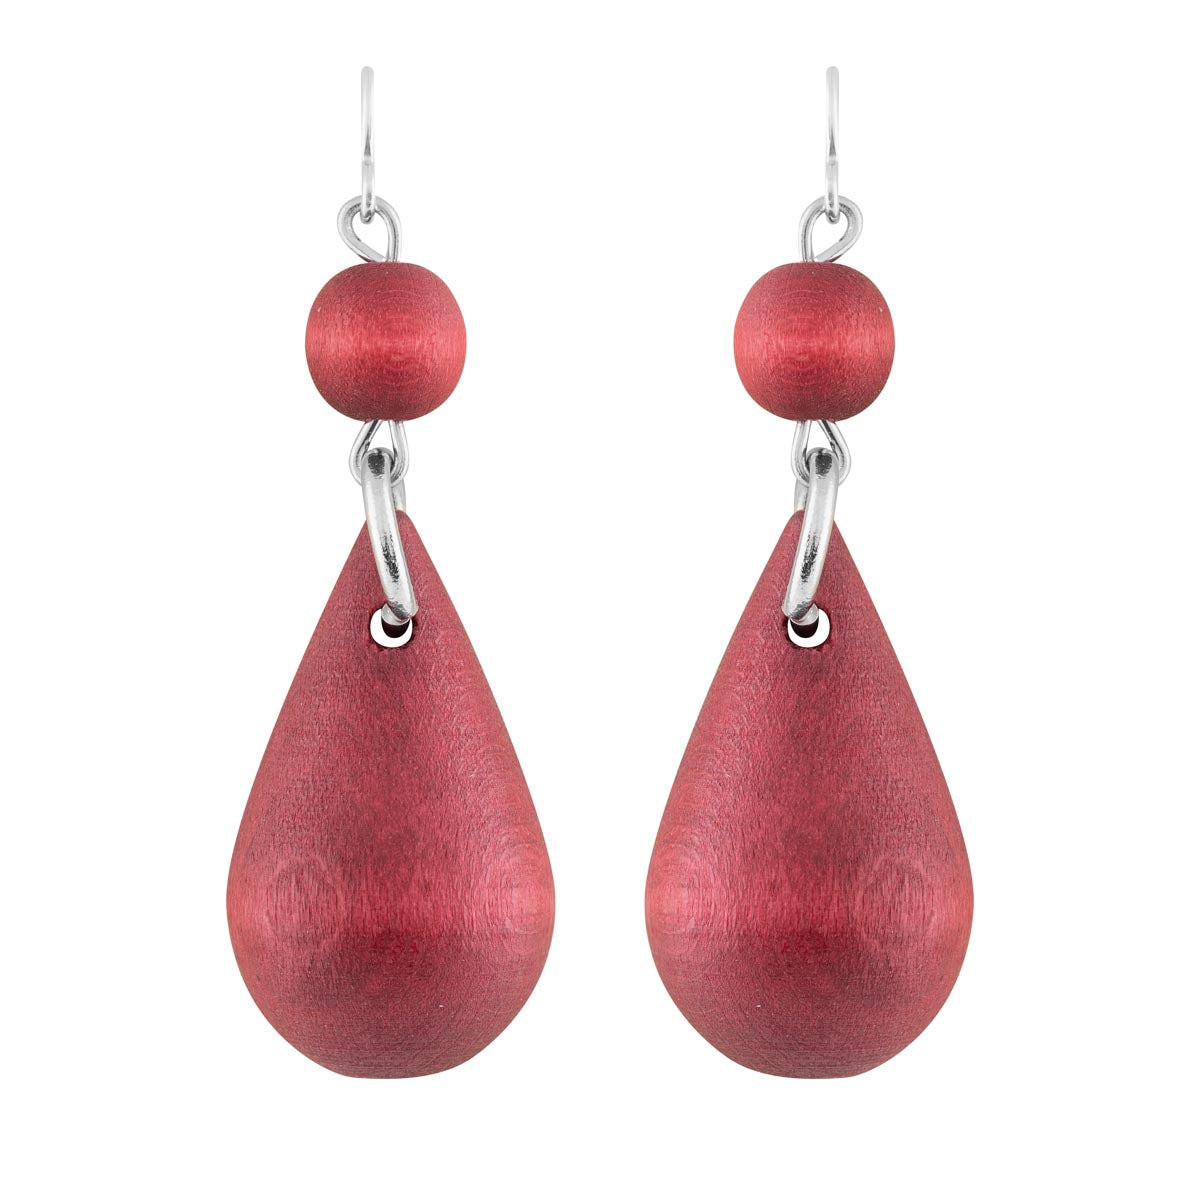 Pisara earrings, wine red